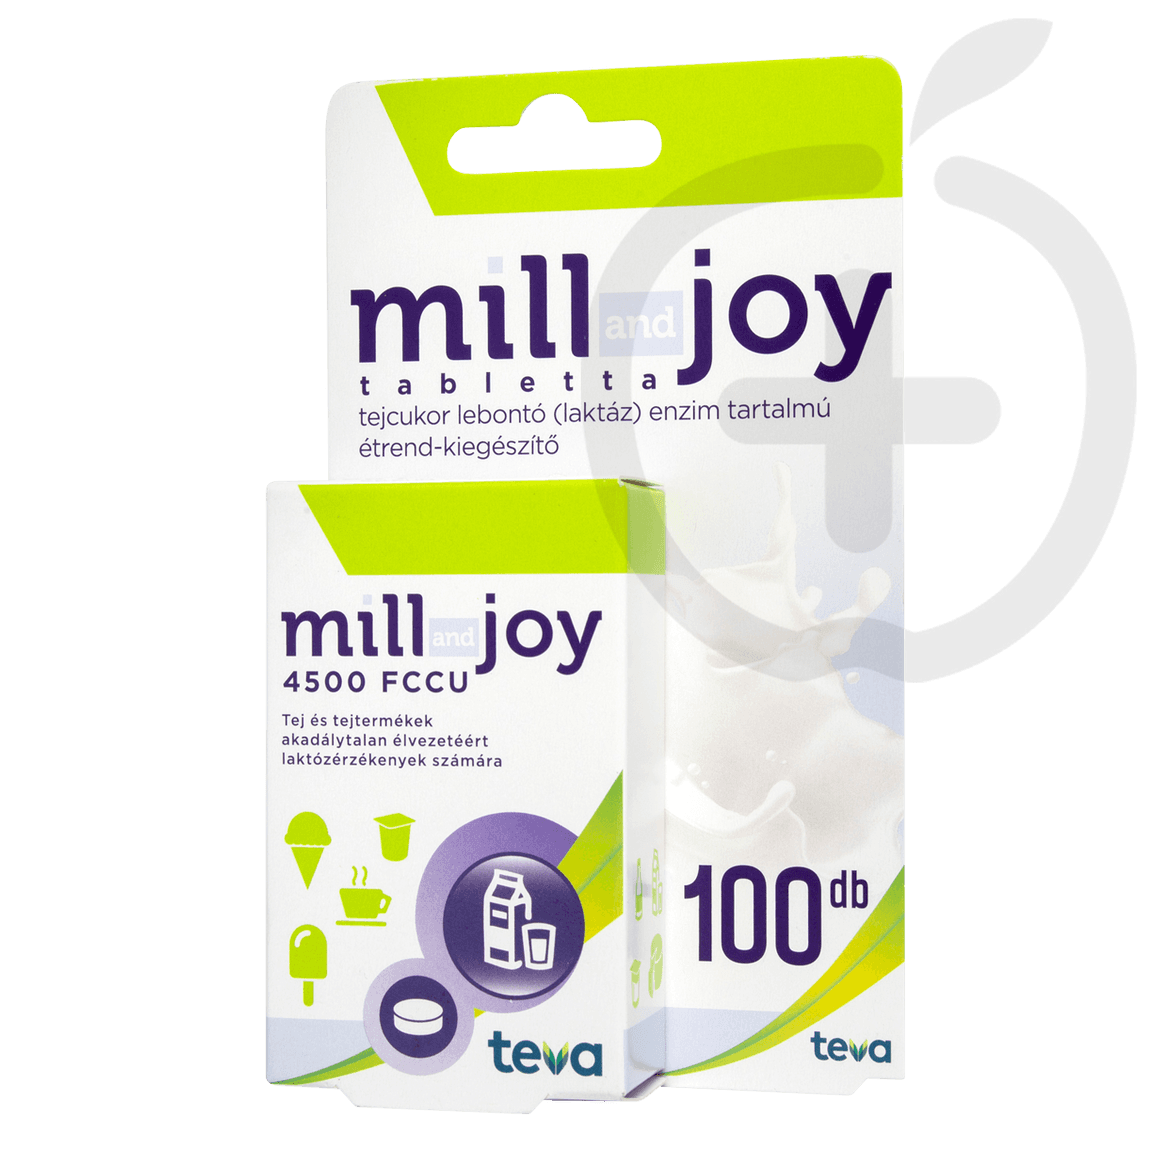 Mill and Joy tejcukor lebontó (laktáz) enzim tartalmú étrend-kiegészítő tabletta